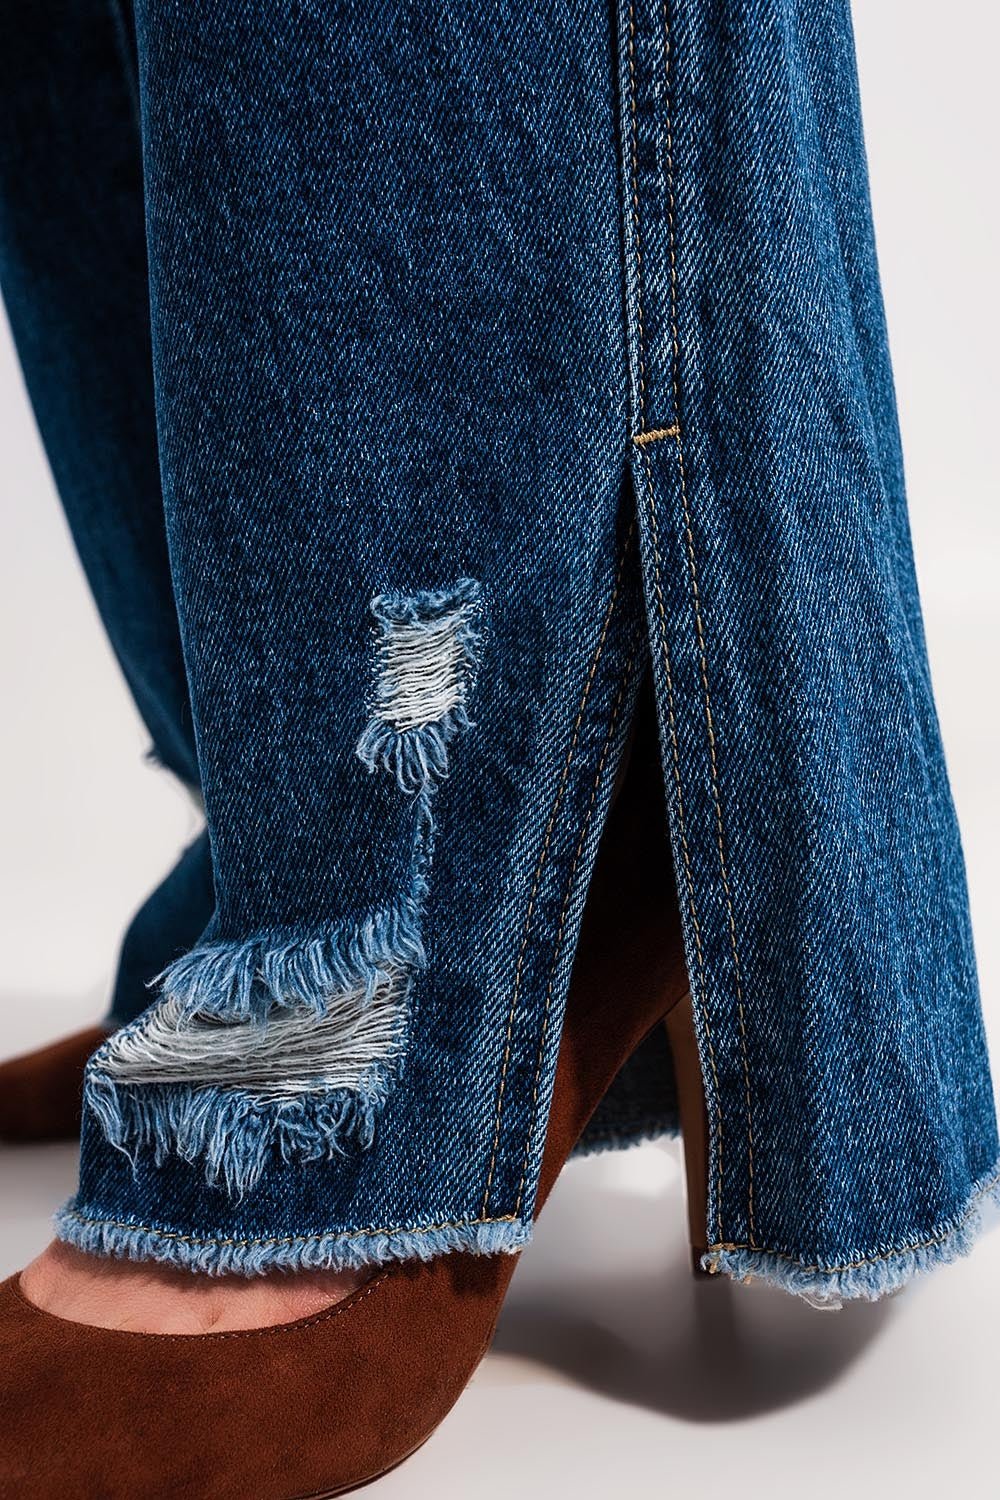 Split Hem Jeans in Medium Denim - Mack & Harvie